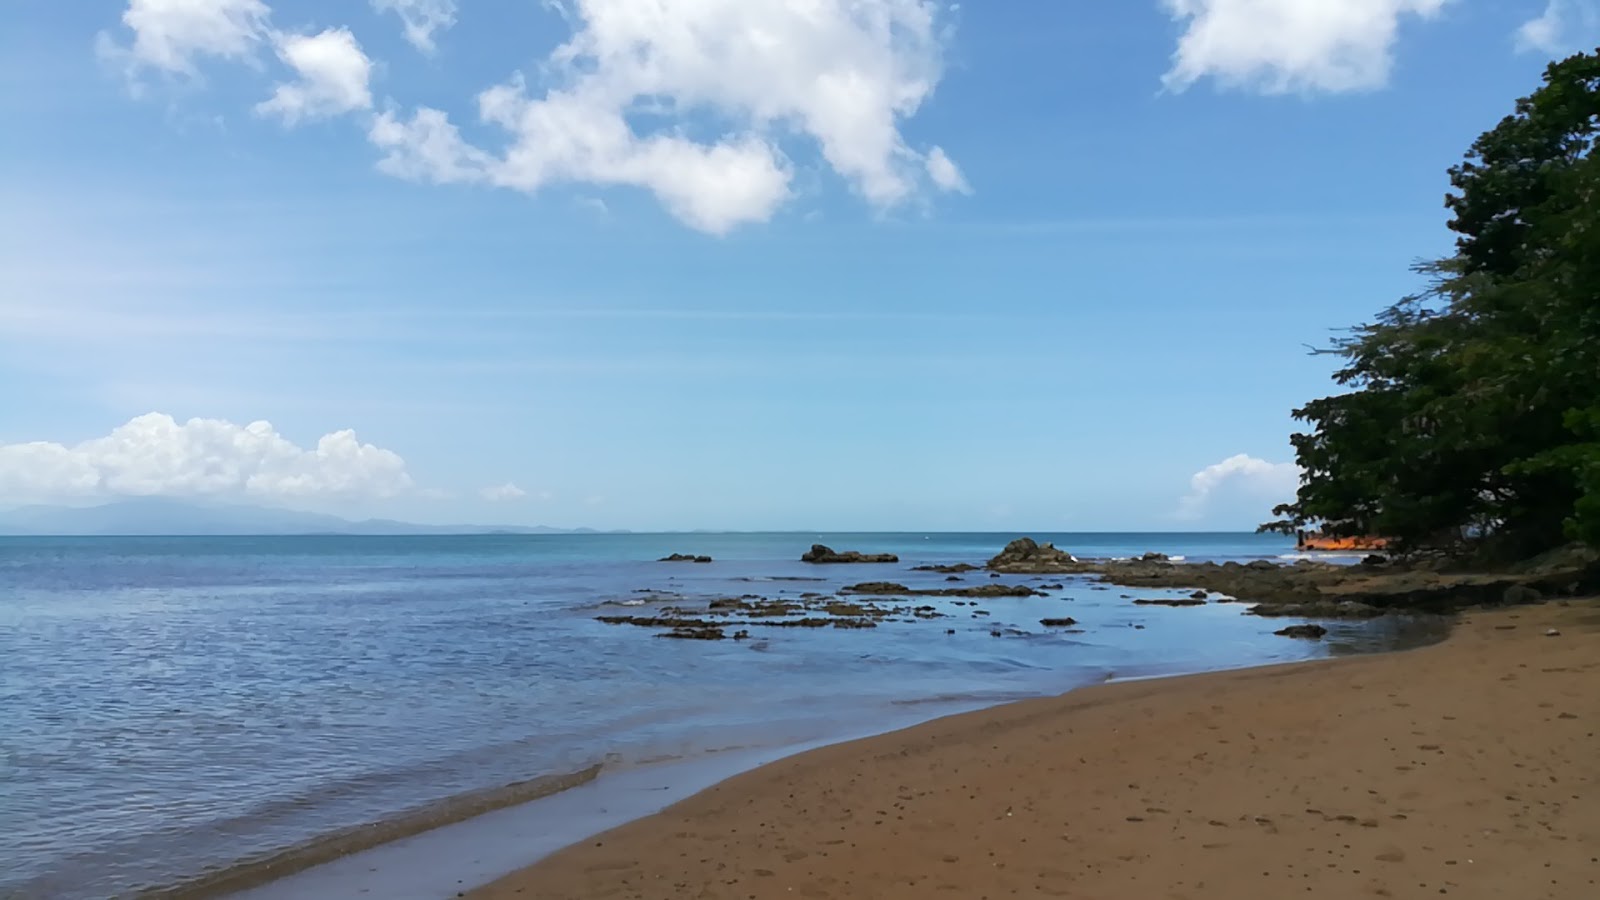 Zdjęcie Sea Glass beach - popularne miejsce wśród znawców relaksu